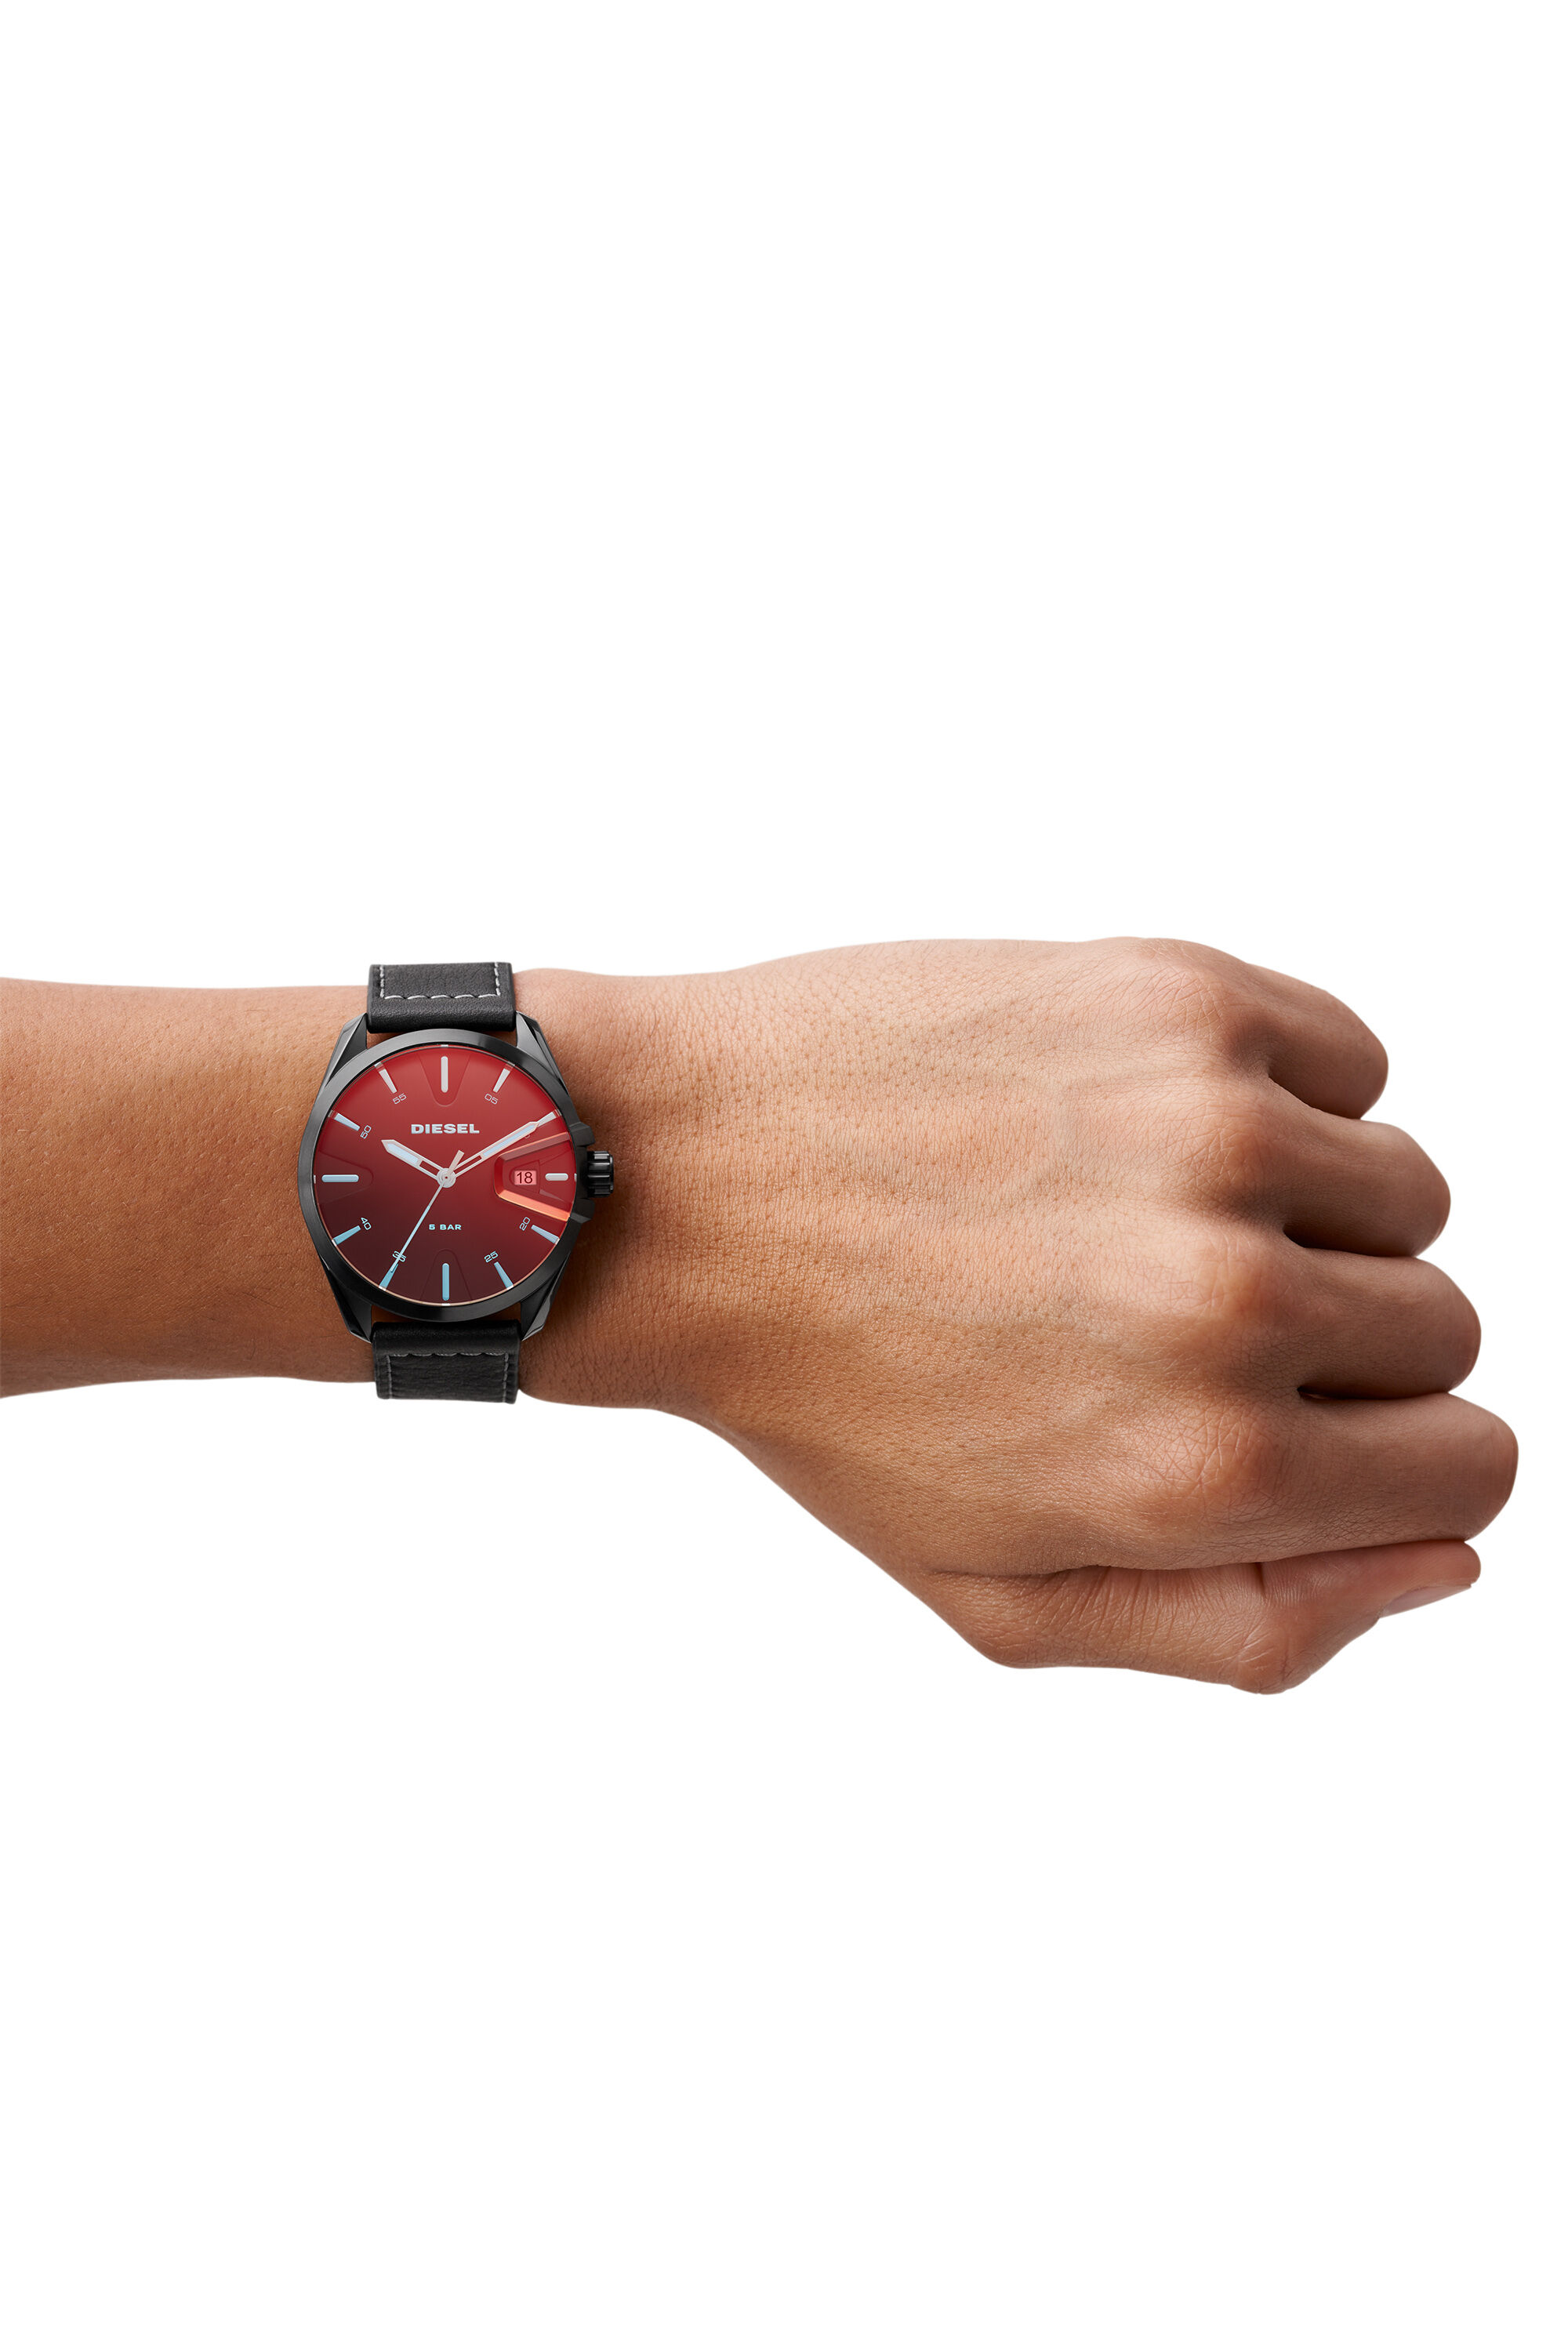 DZ1945 Man: MS9 three-hand date black leather watch | Diesel